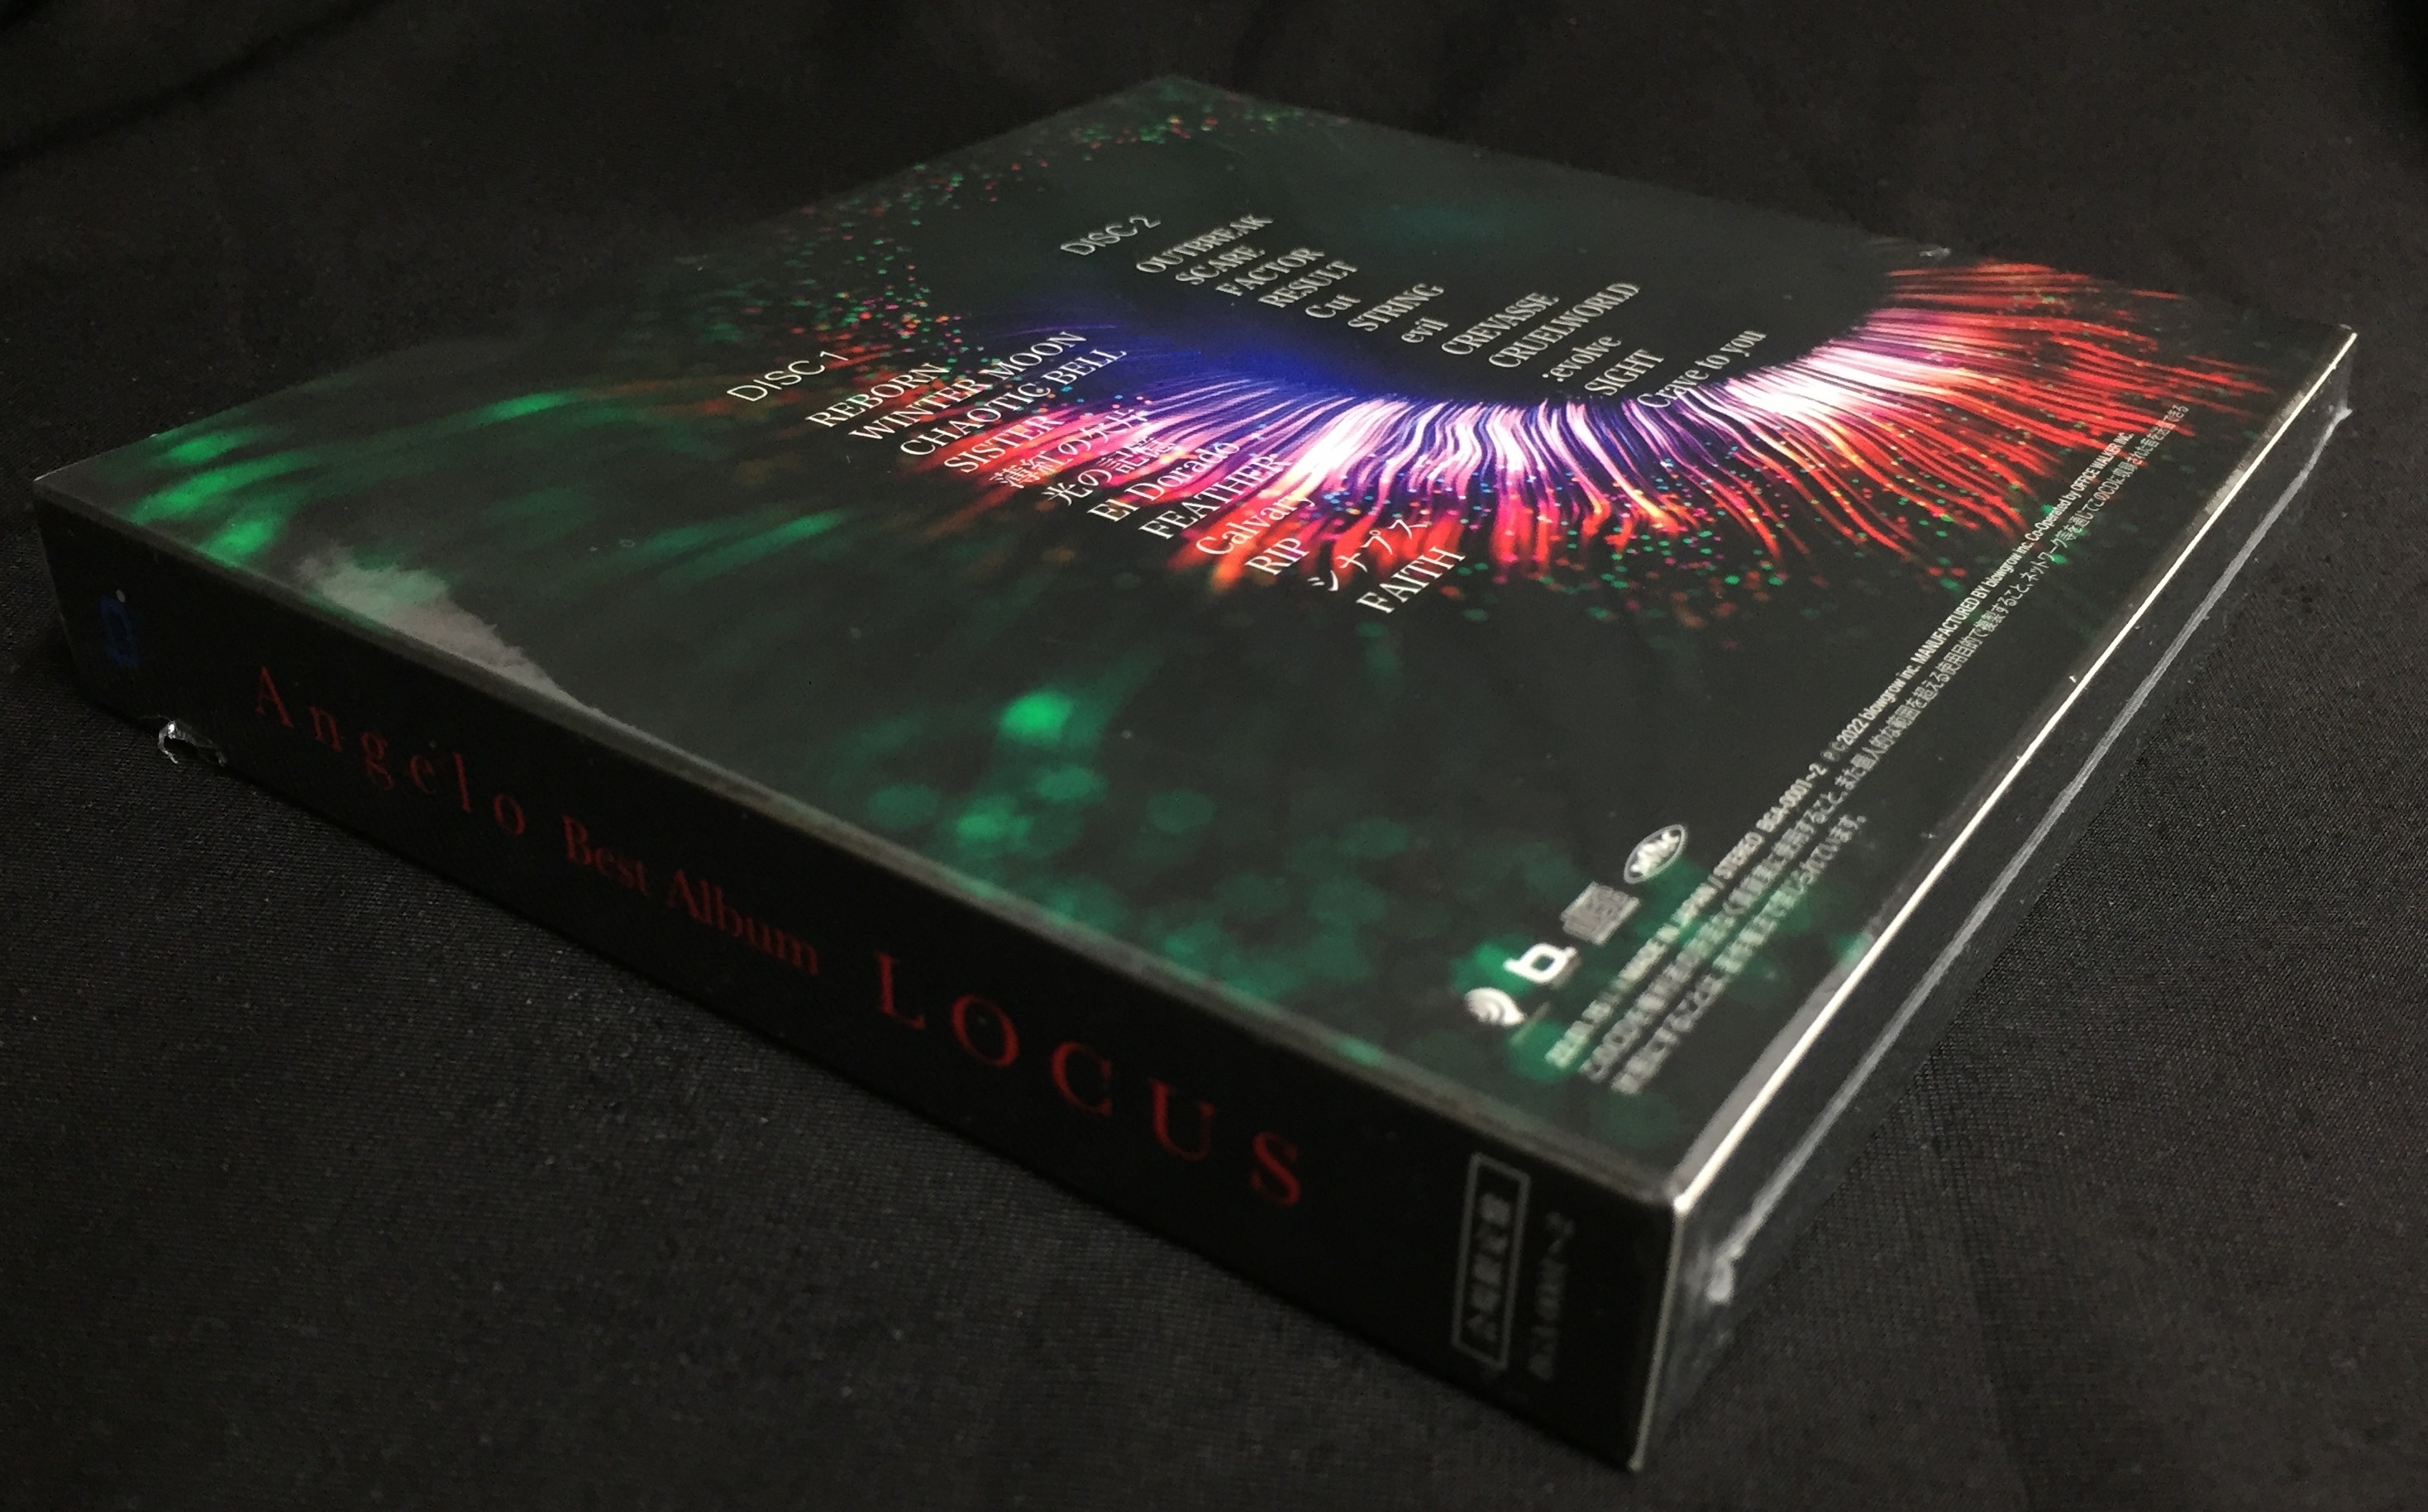 Angelo 会場限定盤(2CD) LOCUS | ありある | まんだらけ MANDARAKE